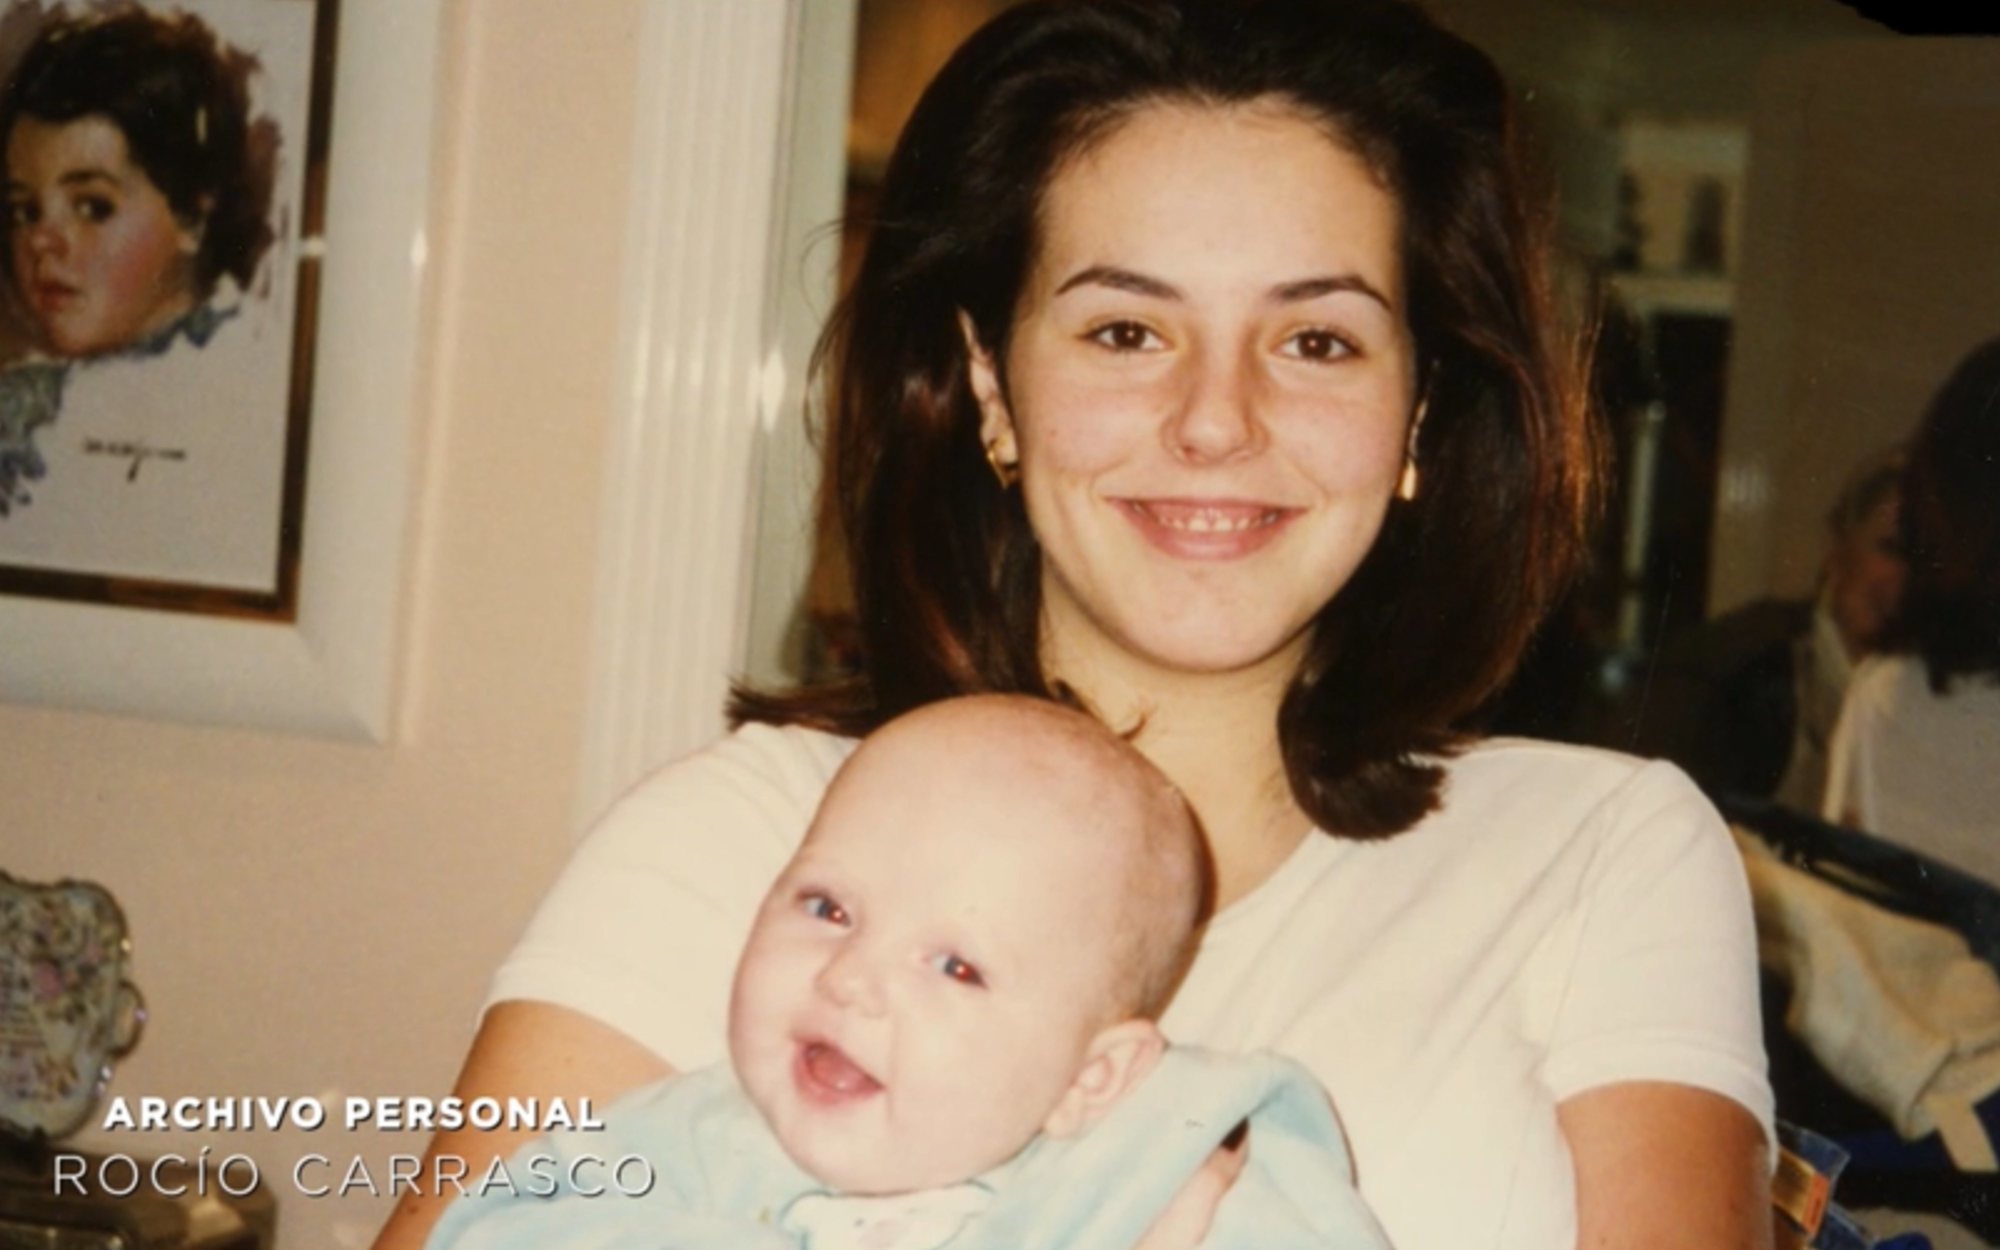 La emoción de Rocío Carrasco al hablar de su primer embarazo y la infancia de Rocío Flores: "Estaba pletórica"